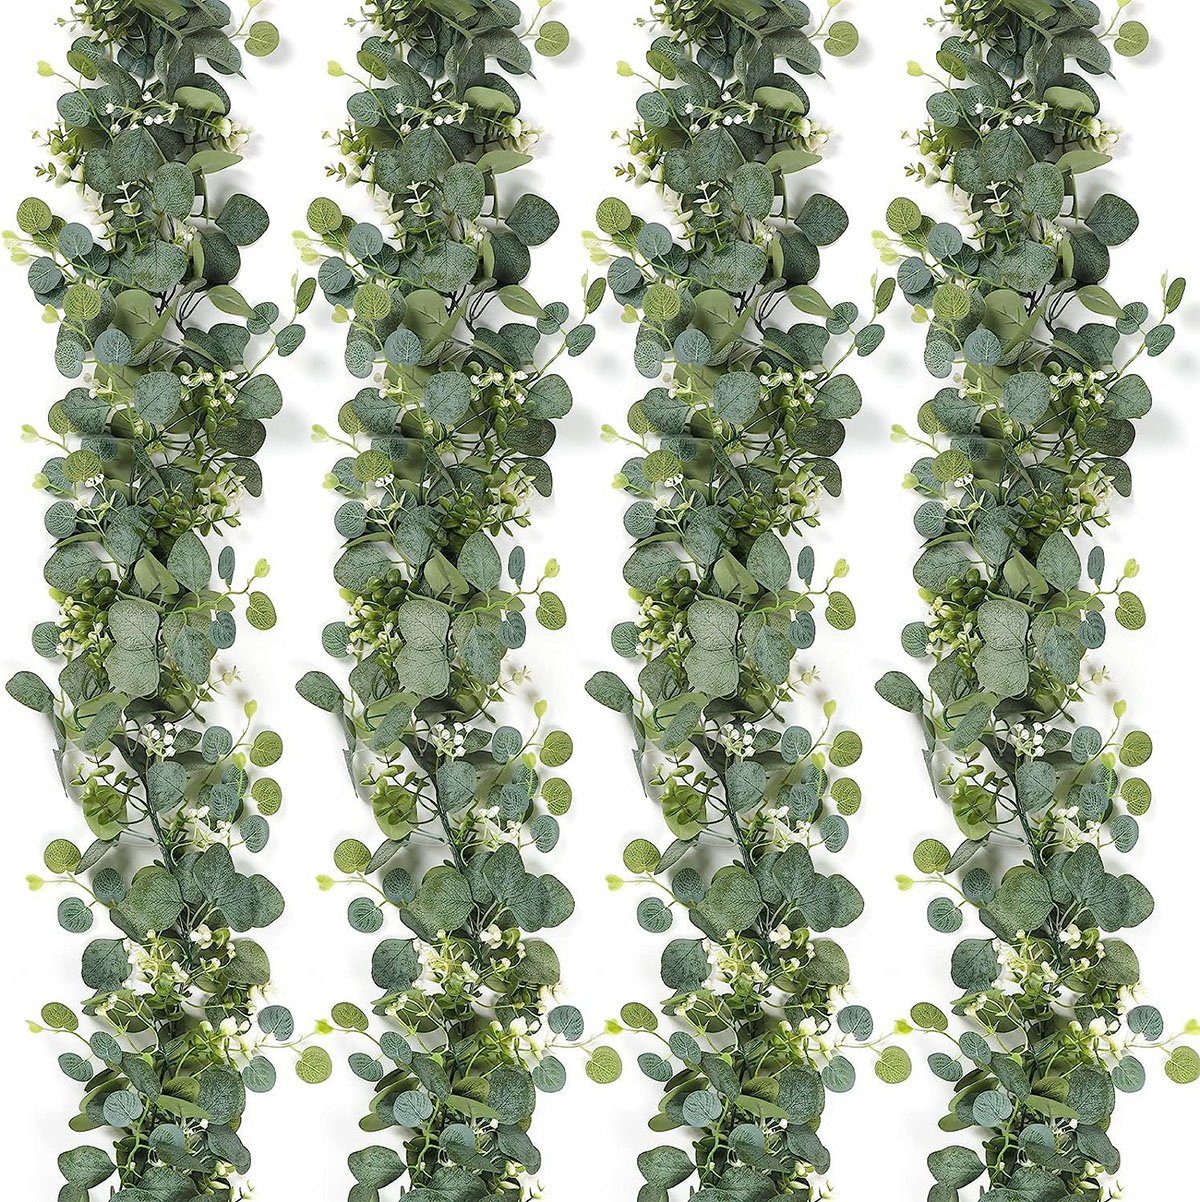 Kunstranke 4 Stück Eukalyptus Weidenblätter, CTGtree Girlande Künstliche Pflanzen